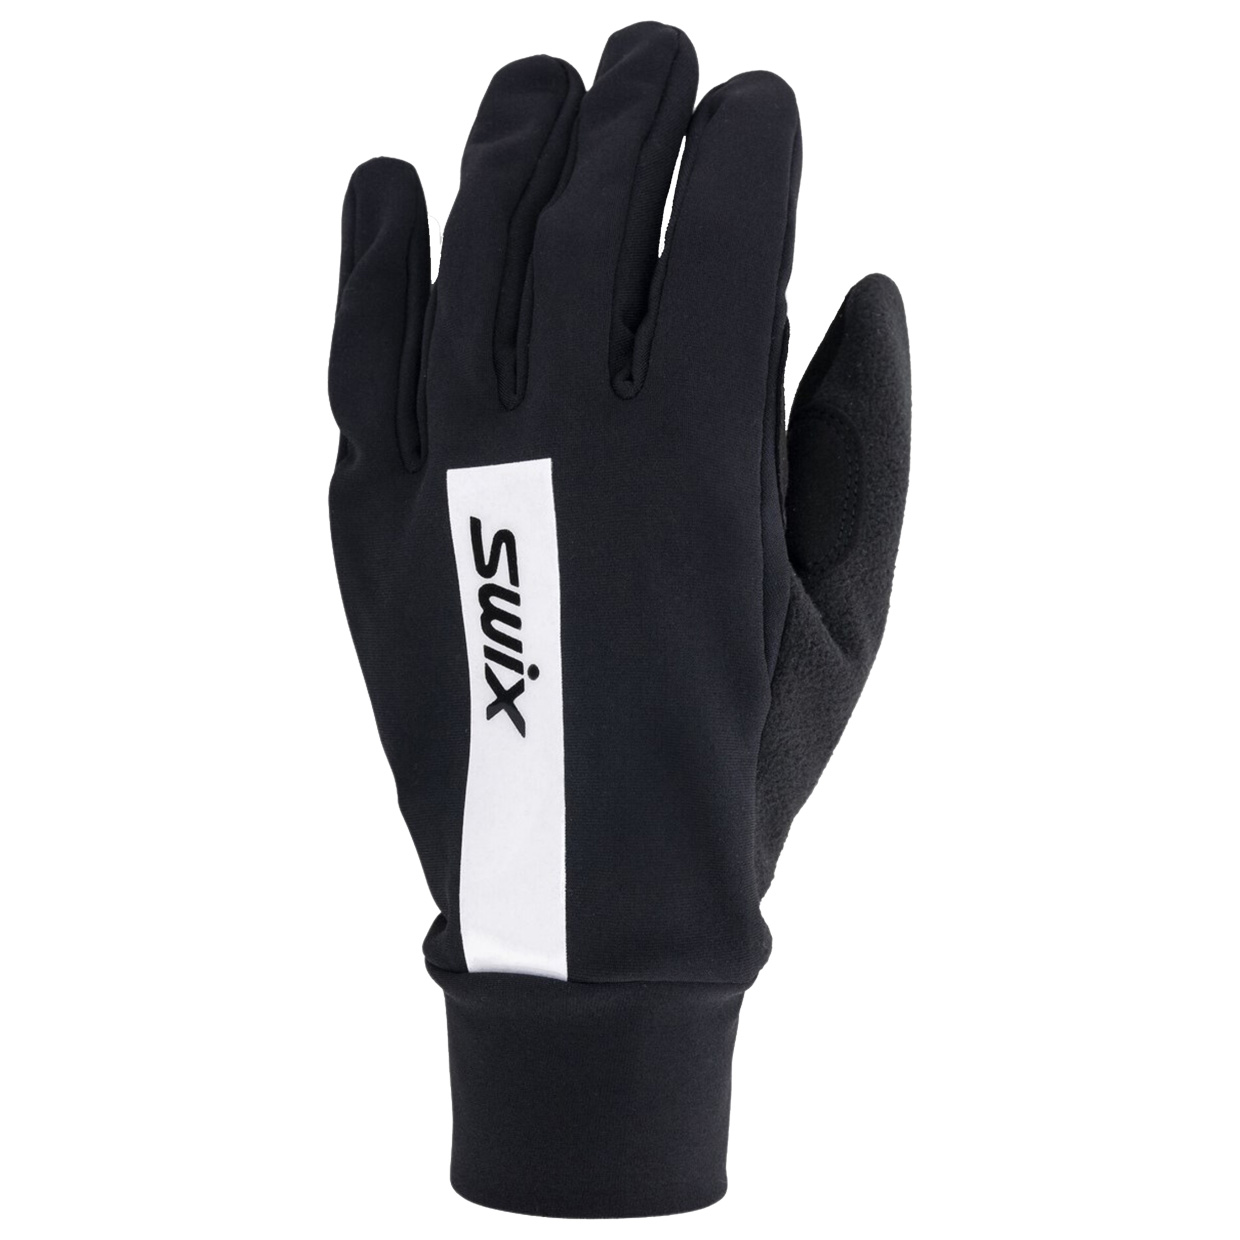 Langlaufhandschuhe Focus Glove